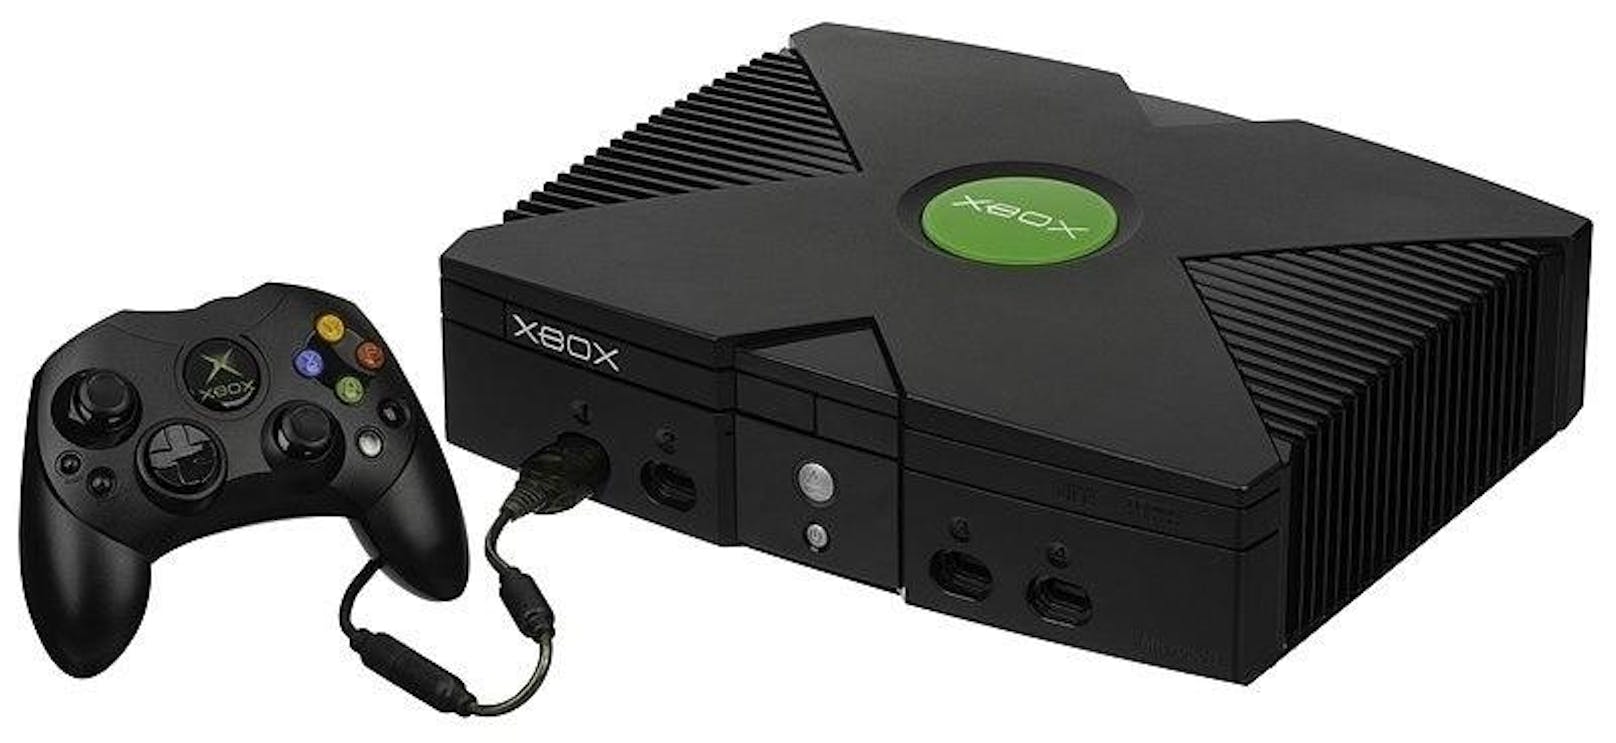 Mit der Xbox startete Microsoft 2001 seinen Erfolgsrun am Konsolenmarkt. Absoluter "System Seller" war die Halo-Spieleserie.